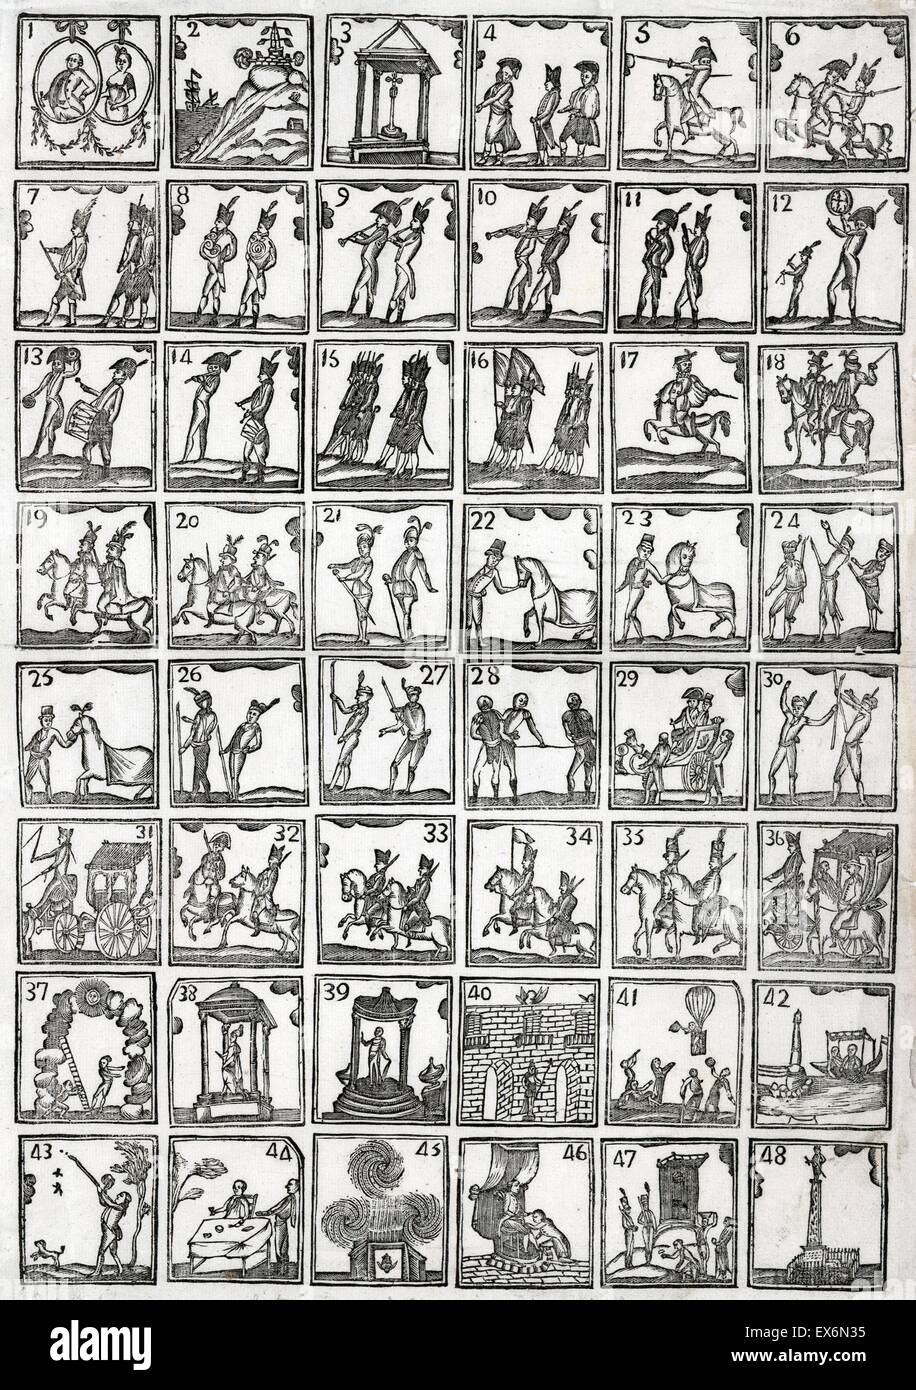 Scènes de la vie du roi Charles IV d'Espagne (1748-1819). Gravure sur bois représente quarante-huit scènes de la vie de Charles IV. Datée 1788 Banque D'Images